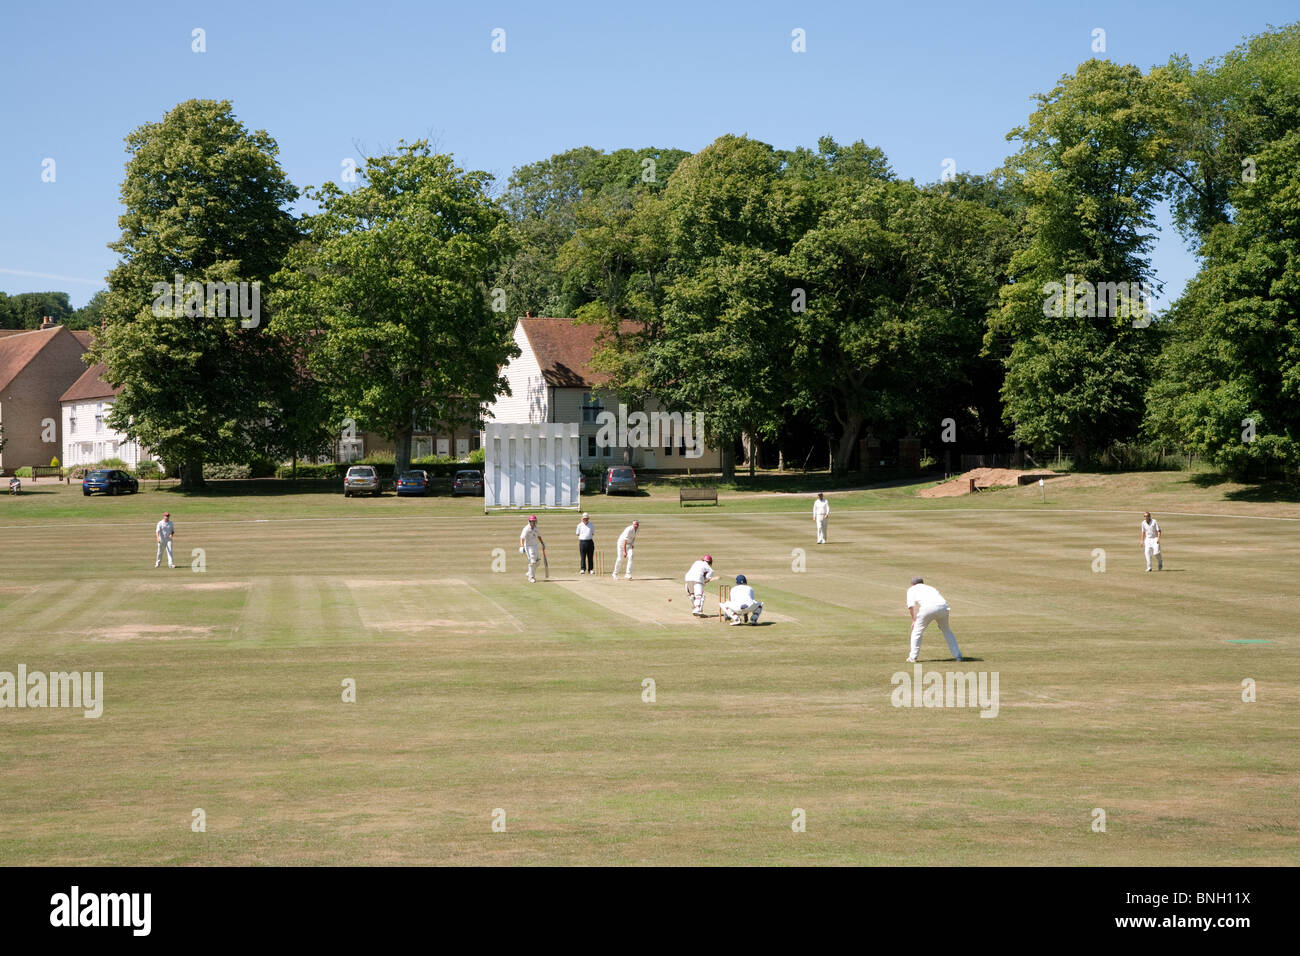 Un week-end jeu de cricket dans le village anglais de Lyminge, Kent, UK Banque D'Images